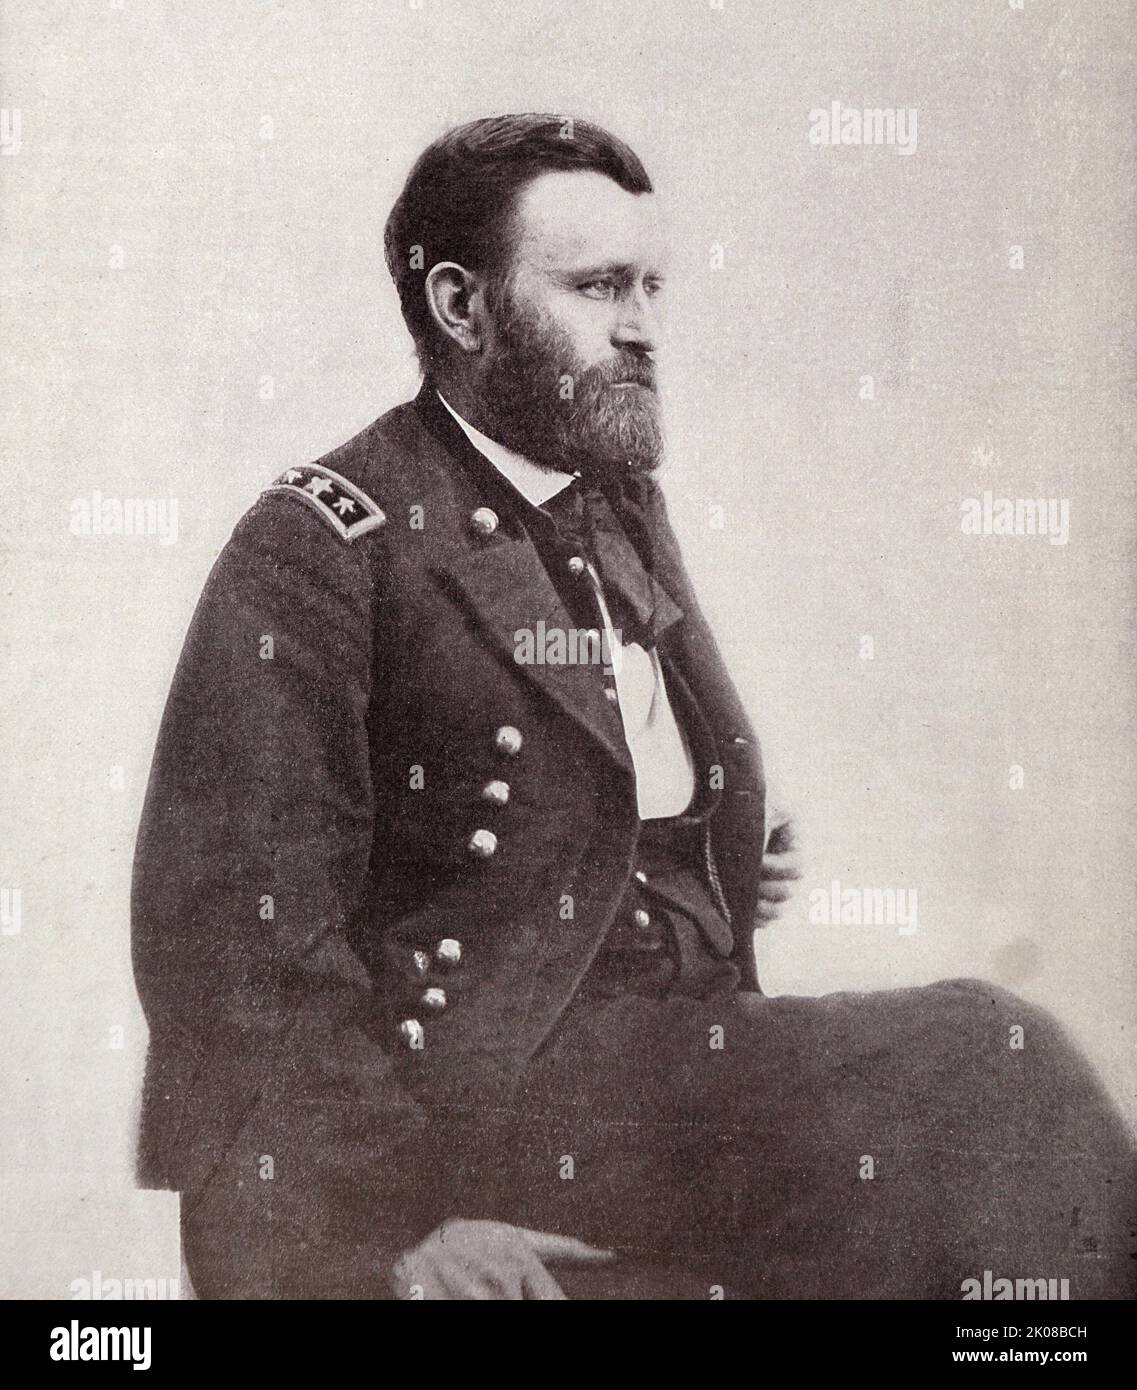 Ulysses S. Grant (geb. Hiram Ulysses Grant; 27. April 1822 - 23. Juli 1885) war ein amerikanischer Militäroffizier und Politiker, der von 1869 bis 1877 als Präsident der Vereinigten Staaten von 18. diente Stockfoto